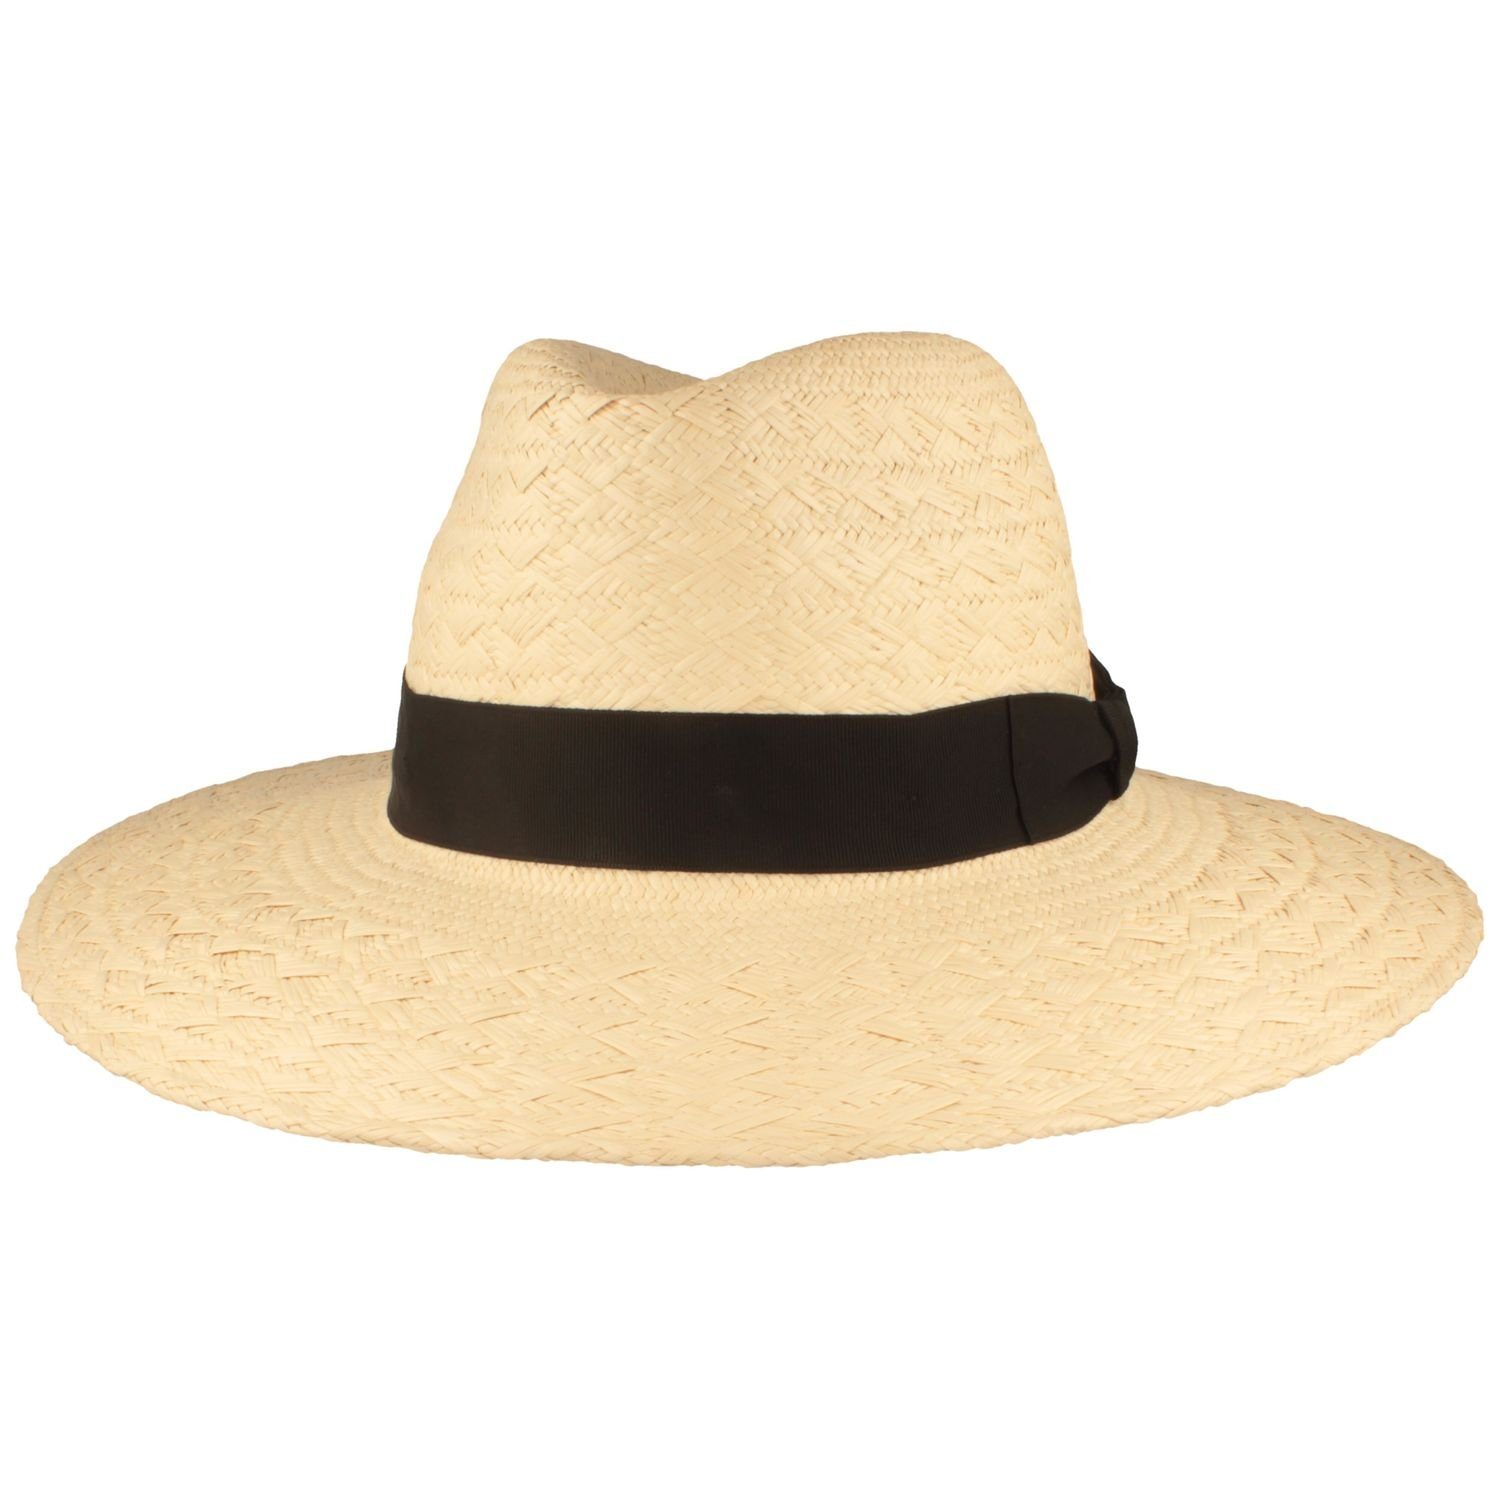 Breiter Strohhut sehr großer grob geflochtener Damen-Panama Hut